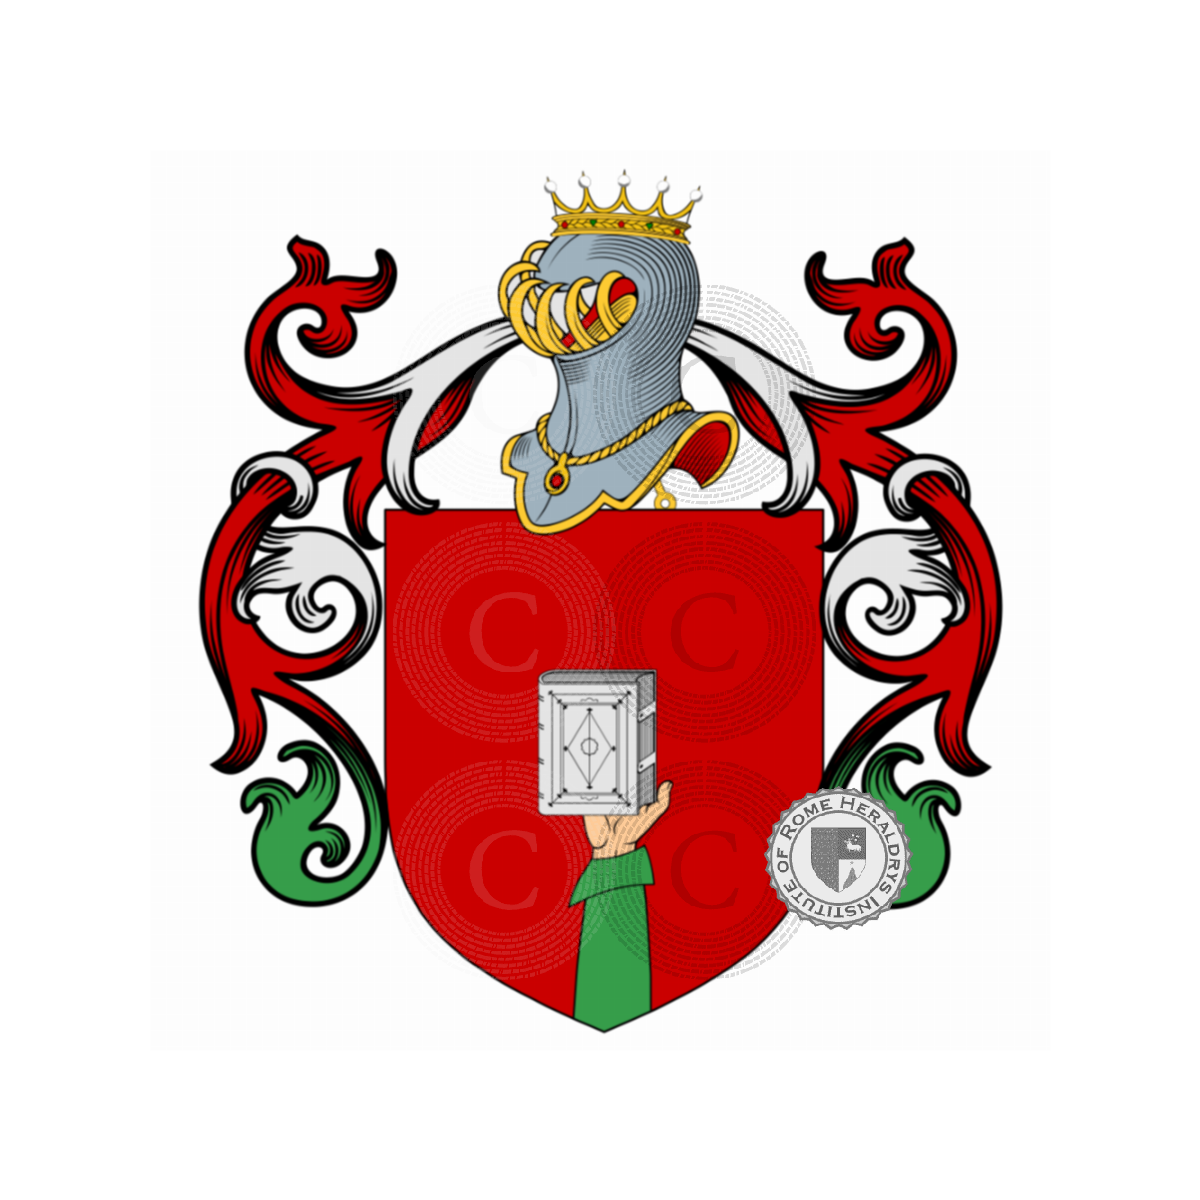 Wappen der FamiliePasolini, dall'Onda,Pasolini dall'Onda,Pasolini Pali,Pasolini Pali dall'Onda